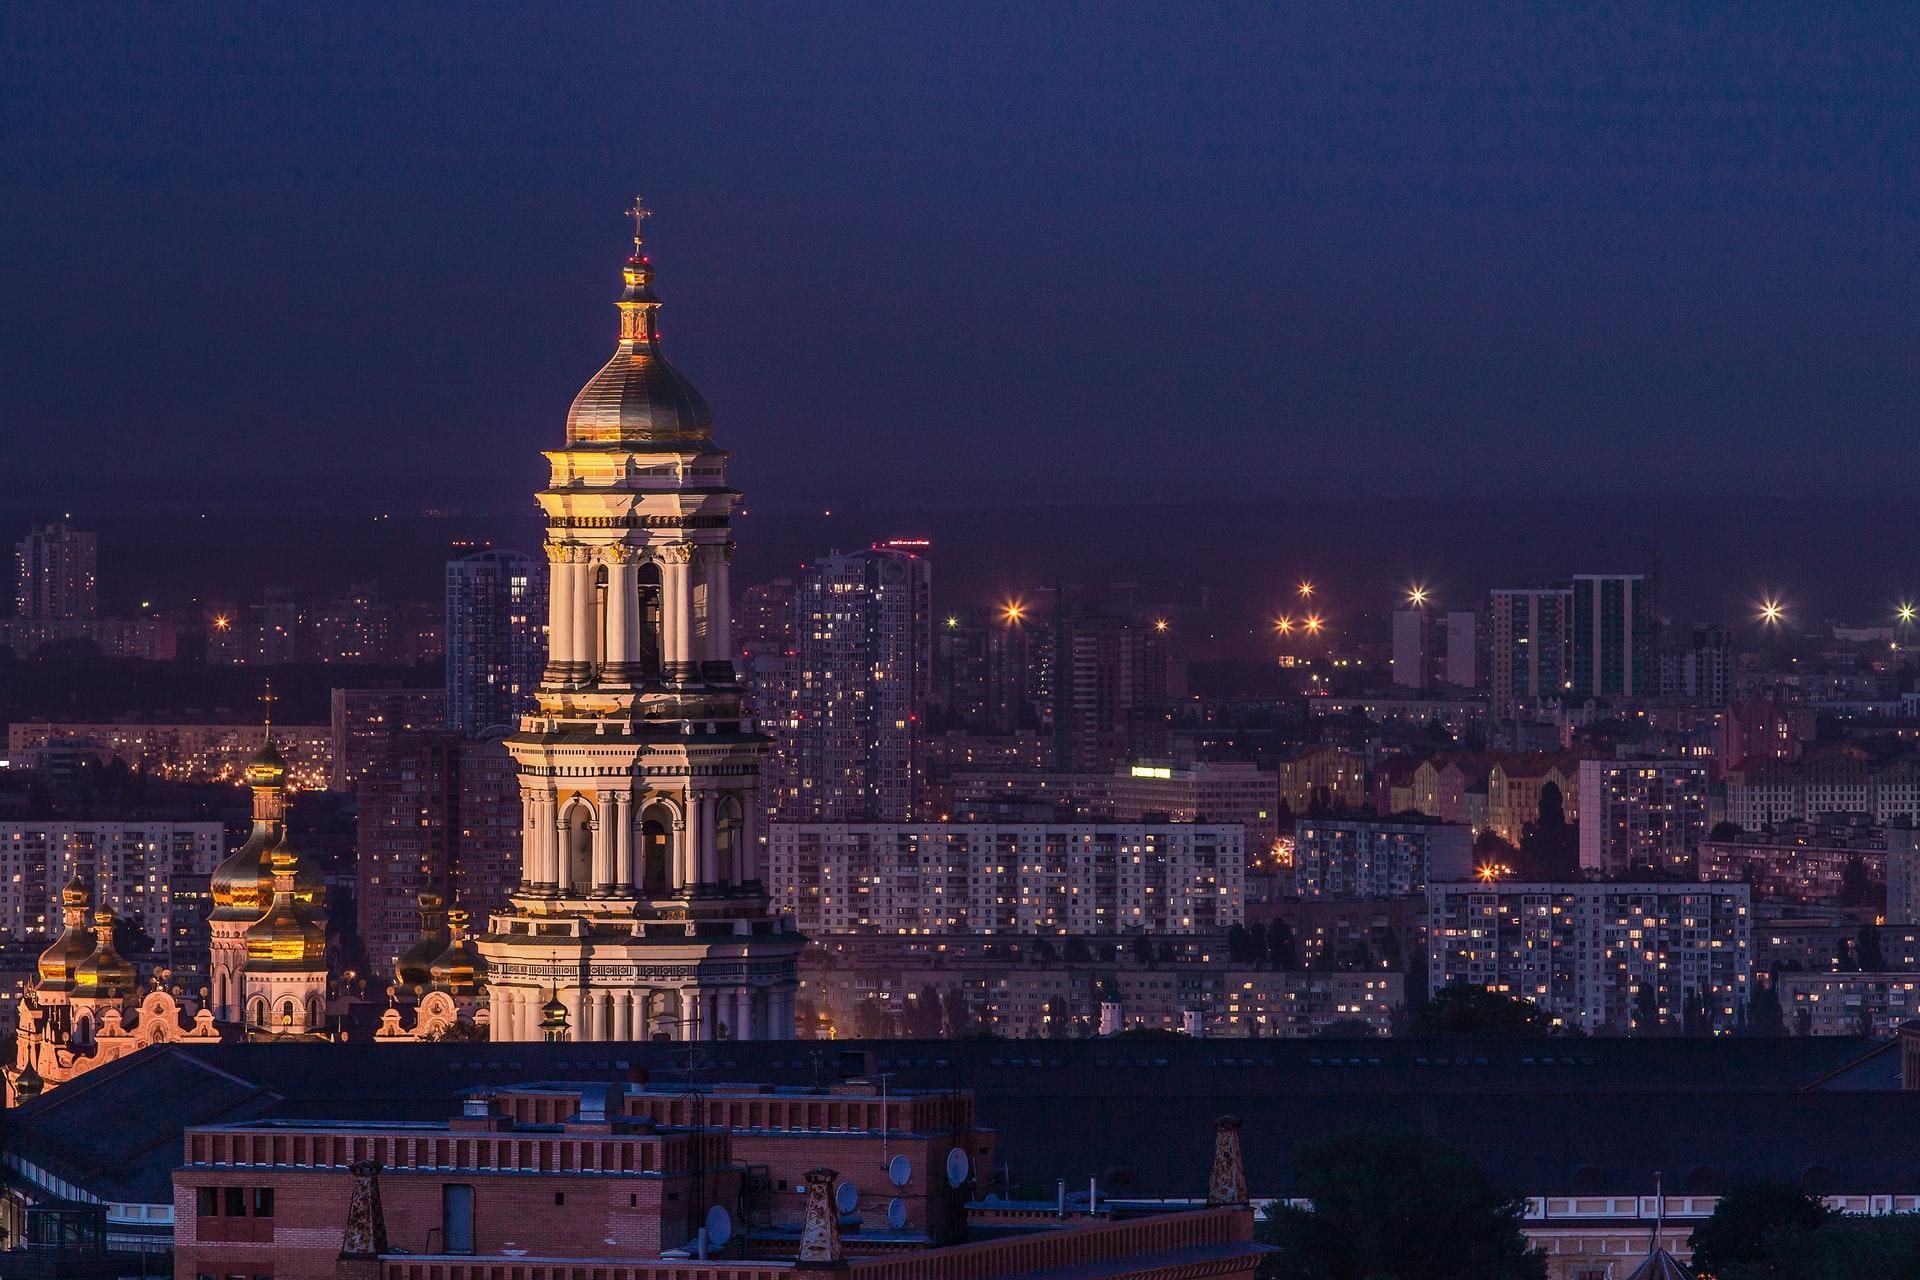 "Місто каштанового щастя": як відомі політики привітали Київ із Днем народження